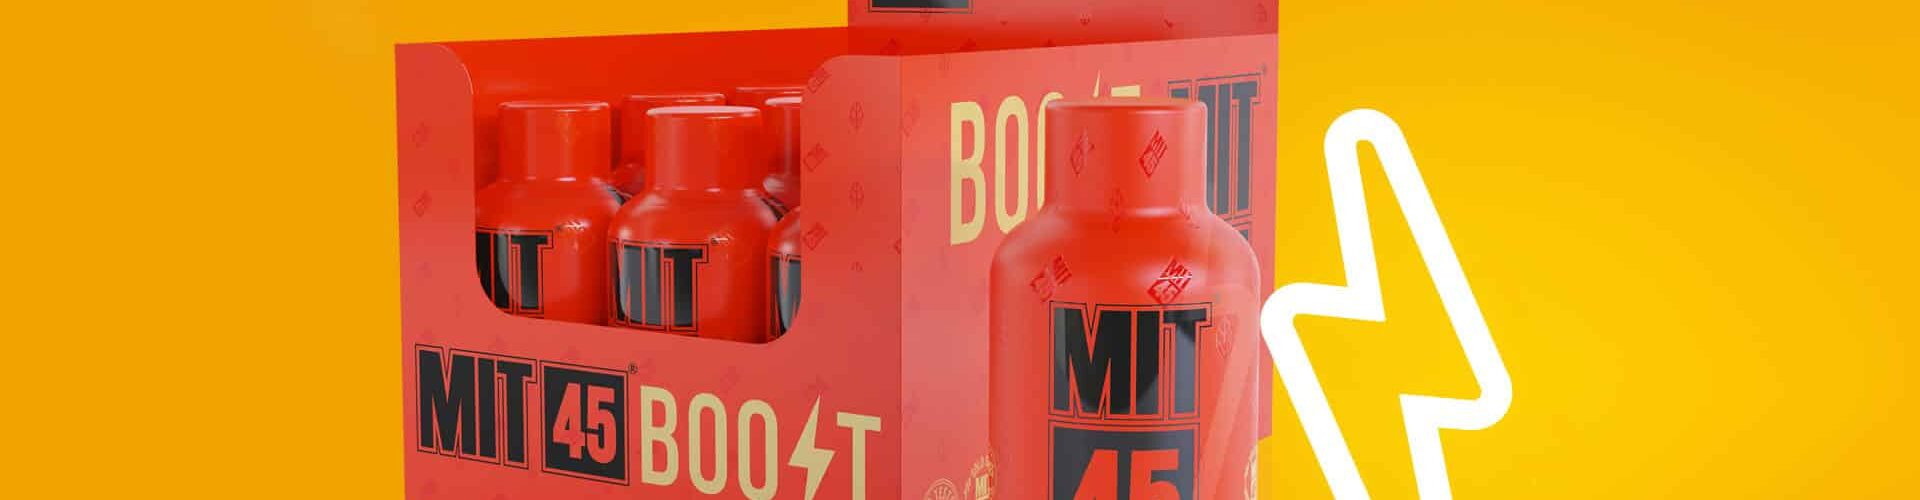 A box of MIT45 Boost units.